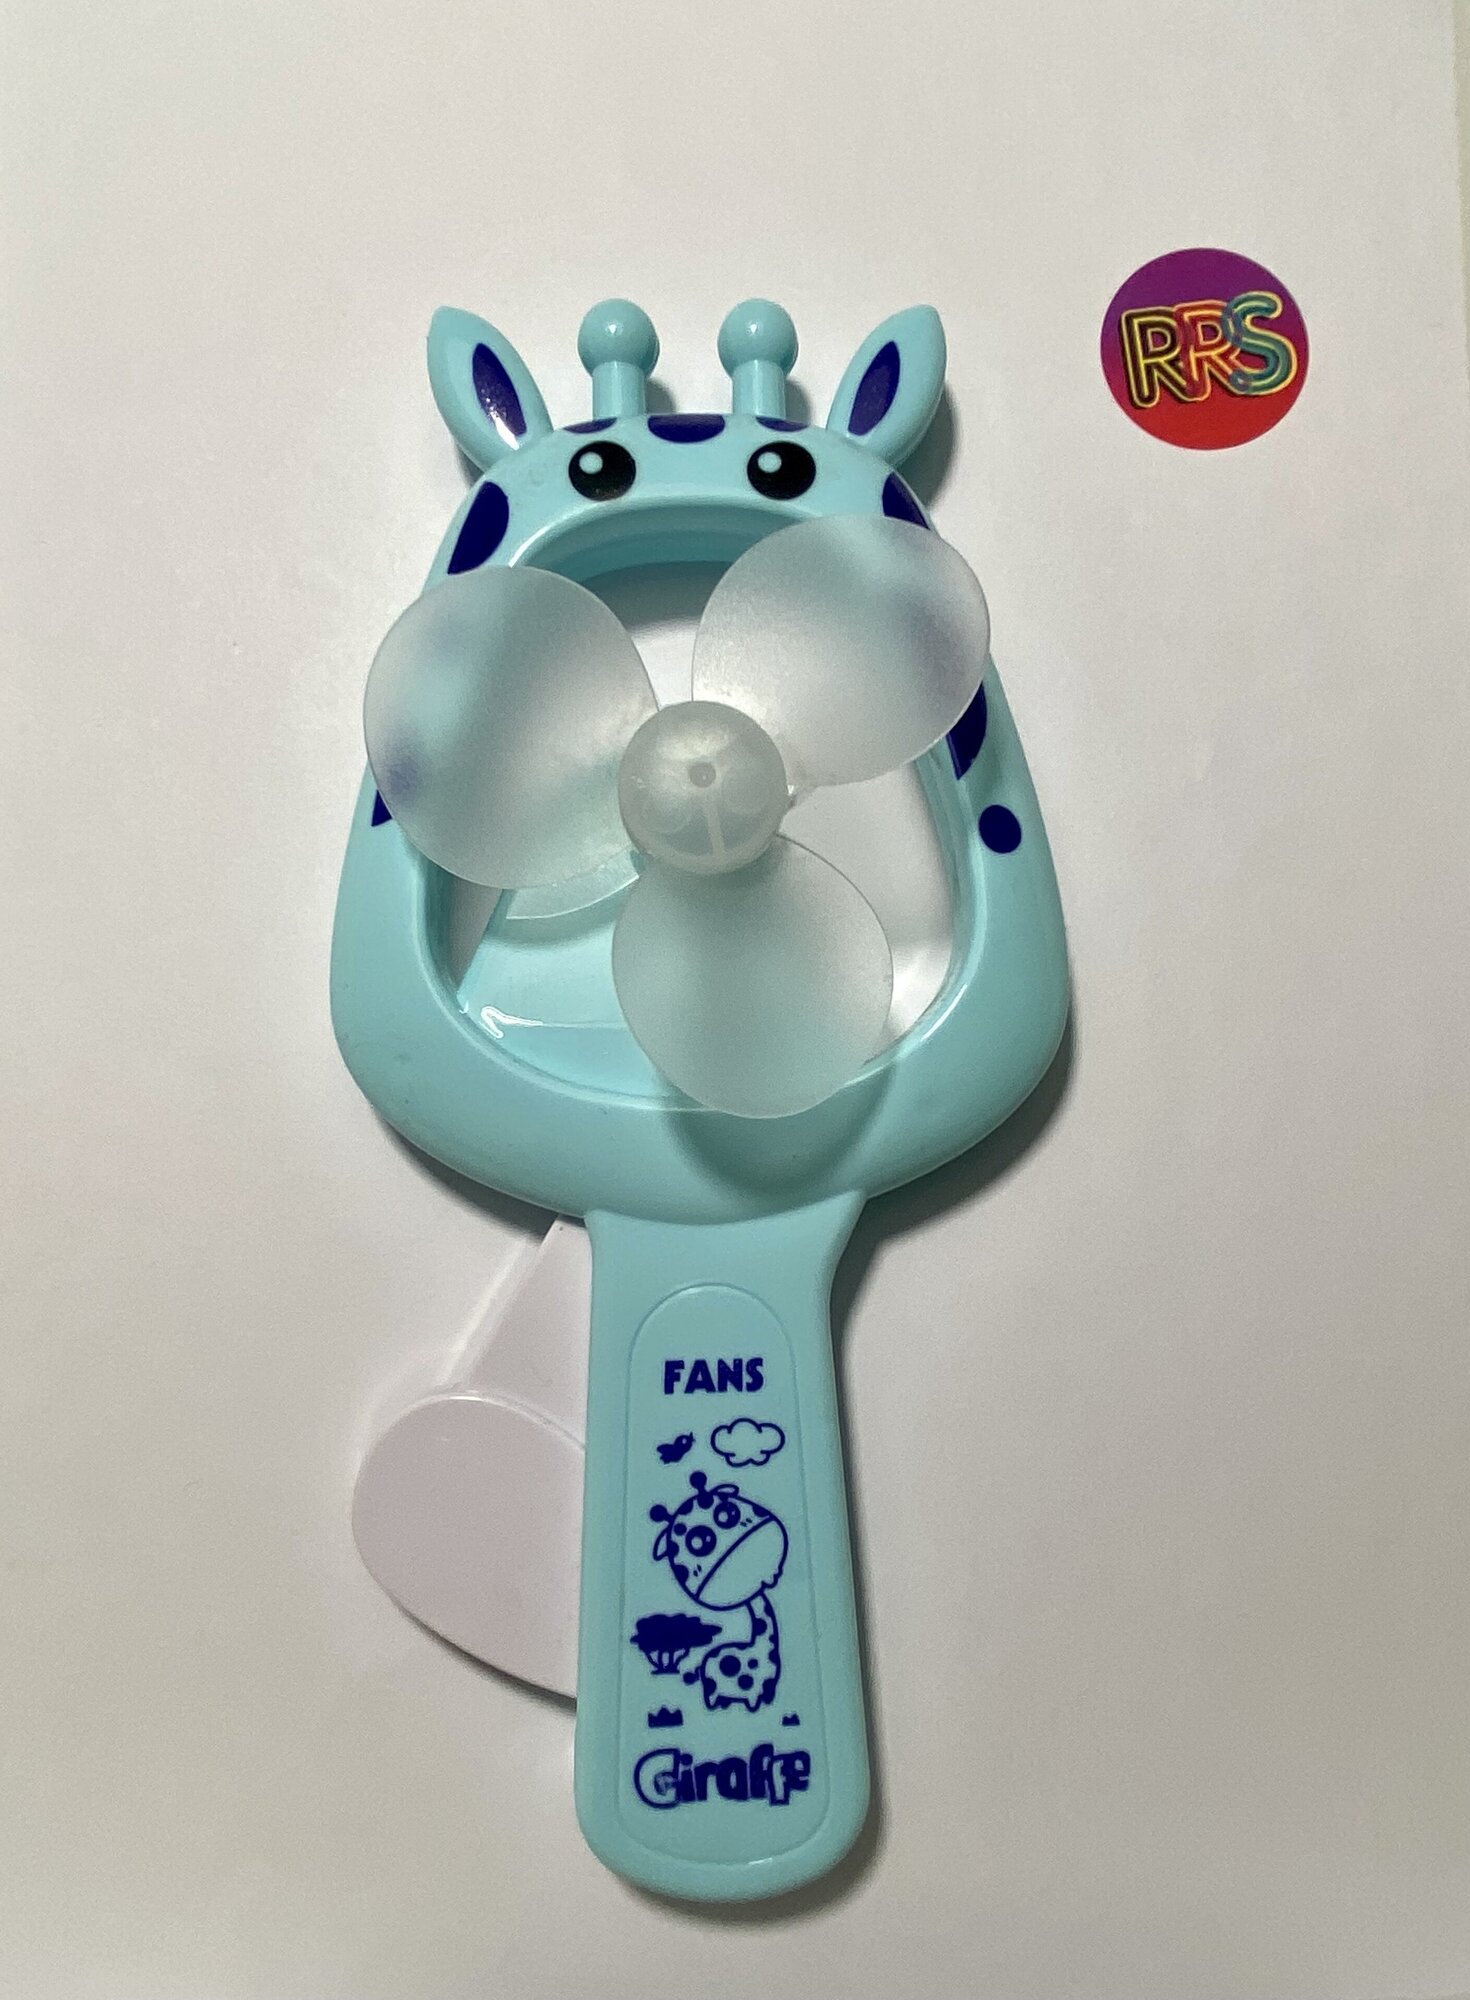 Вентилятор детский механический Giraffe, 20 см/ Вентилятор детский ручной/ Детский механический мини-вентилятор / игрушка Ветерок / Ручной вентилят